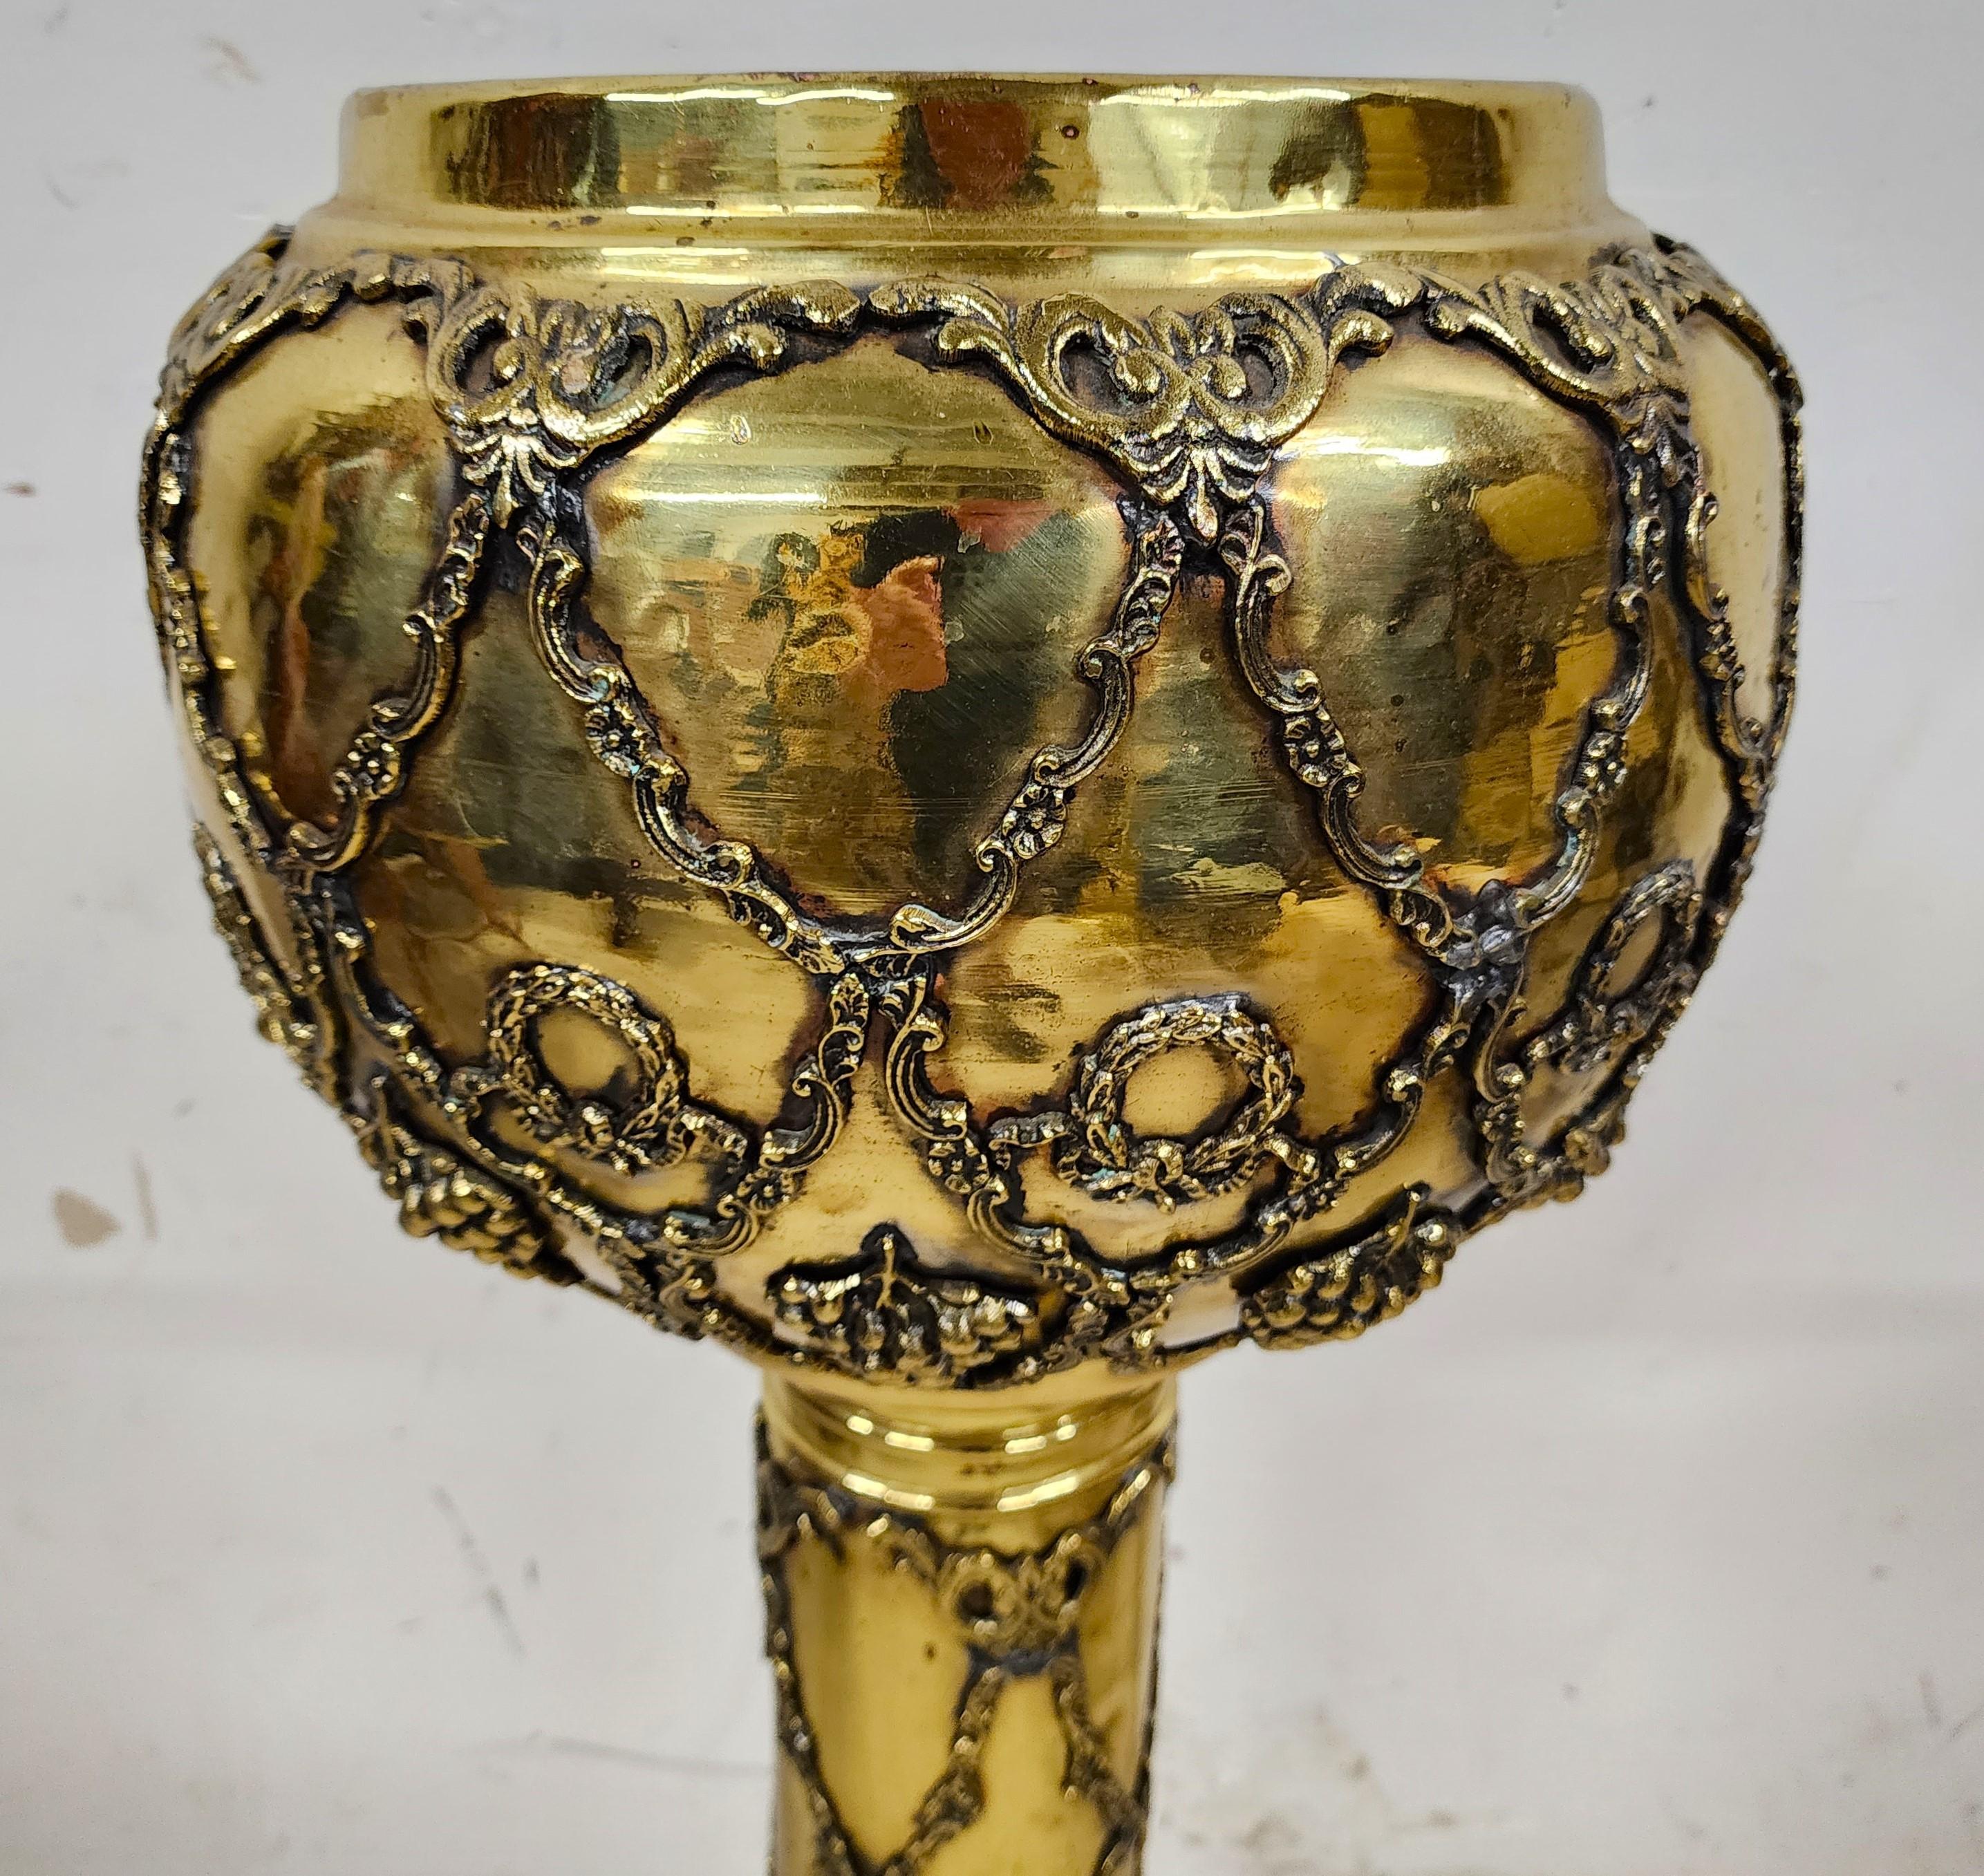 Antique Ornate Pedestal Brass Planter Stands, Set of 2 For Sale 4